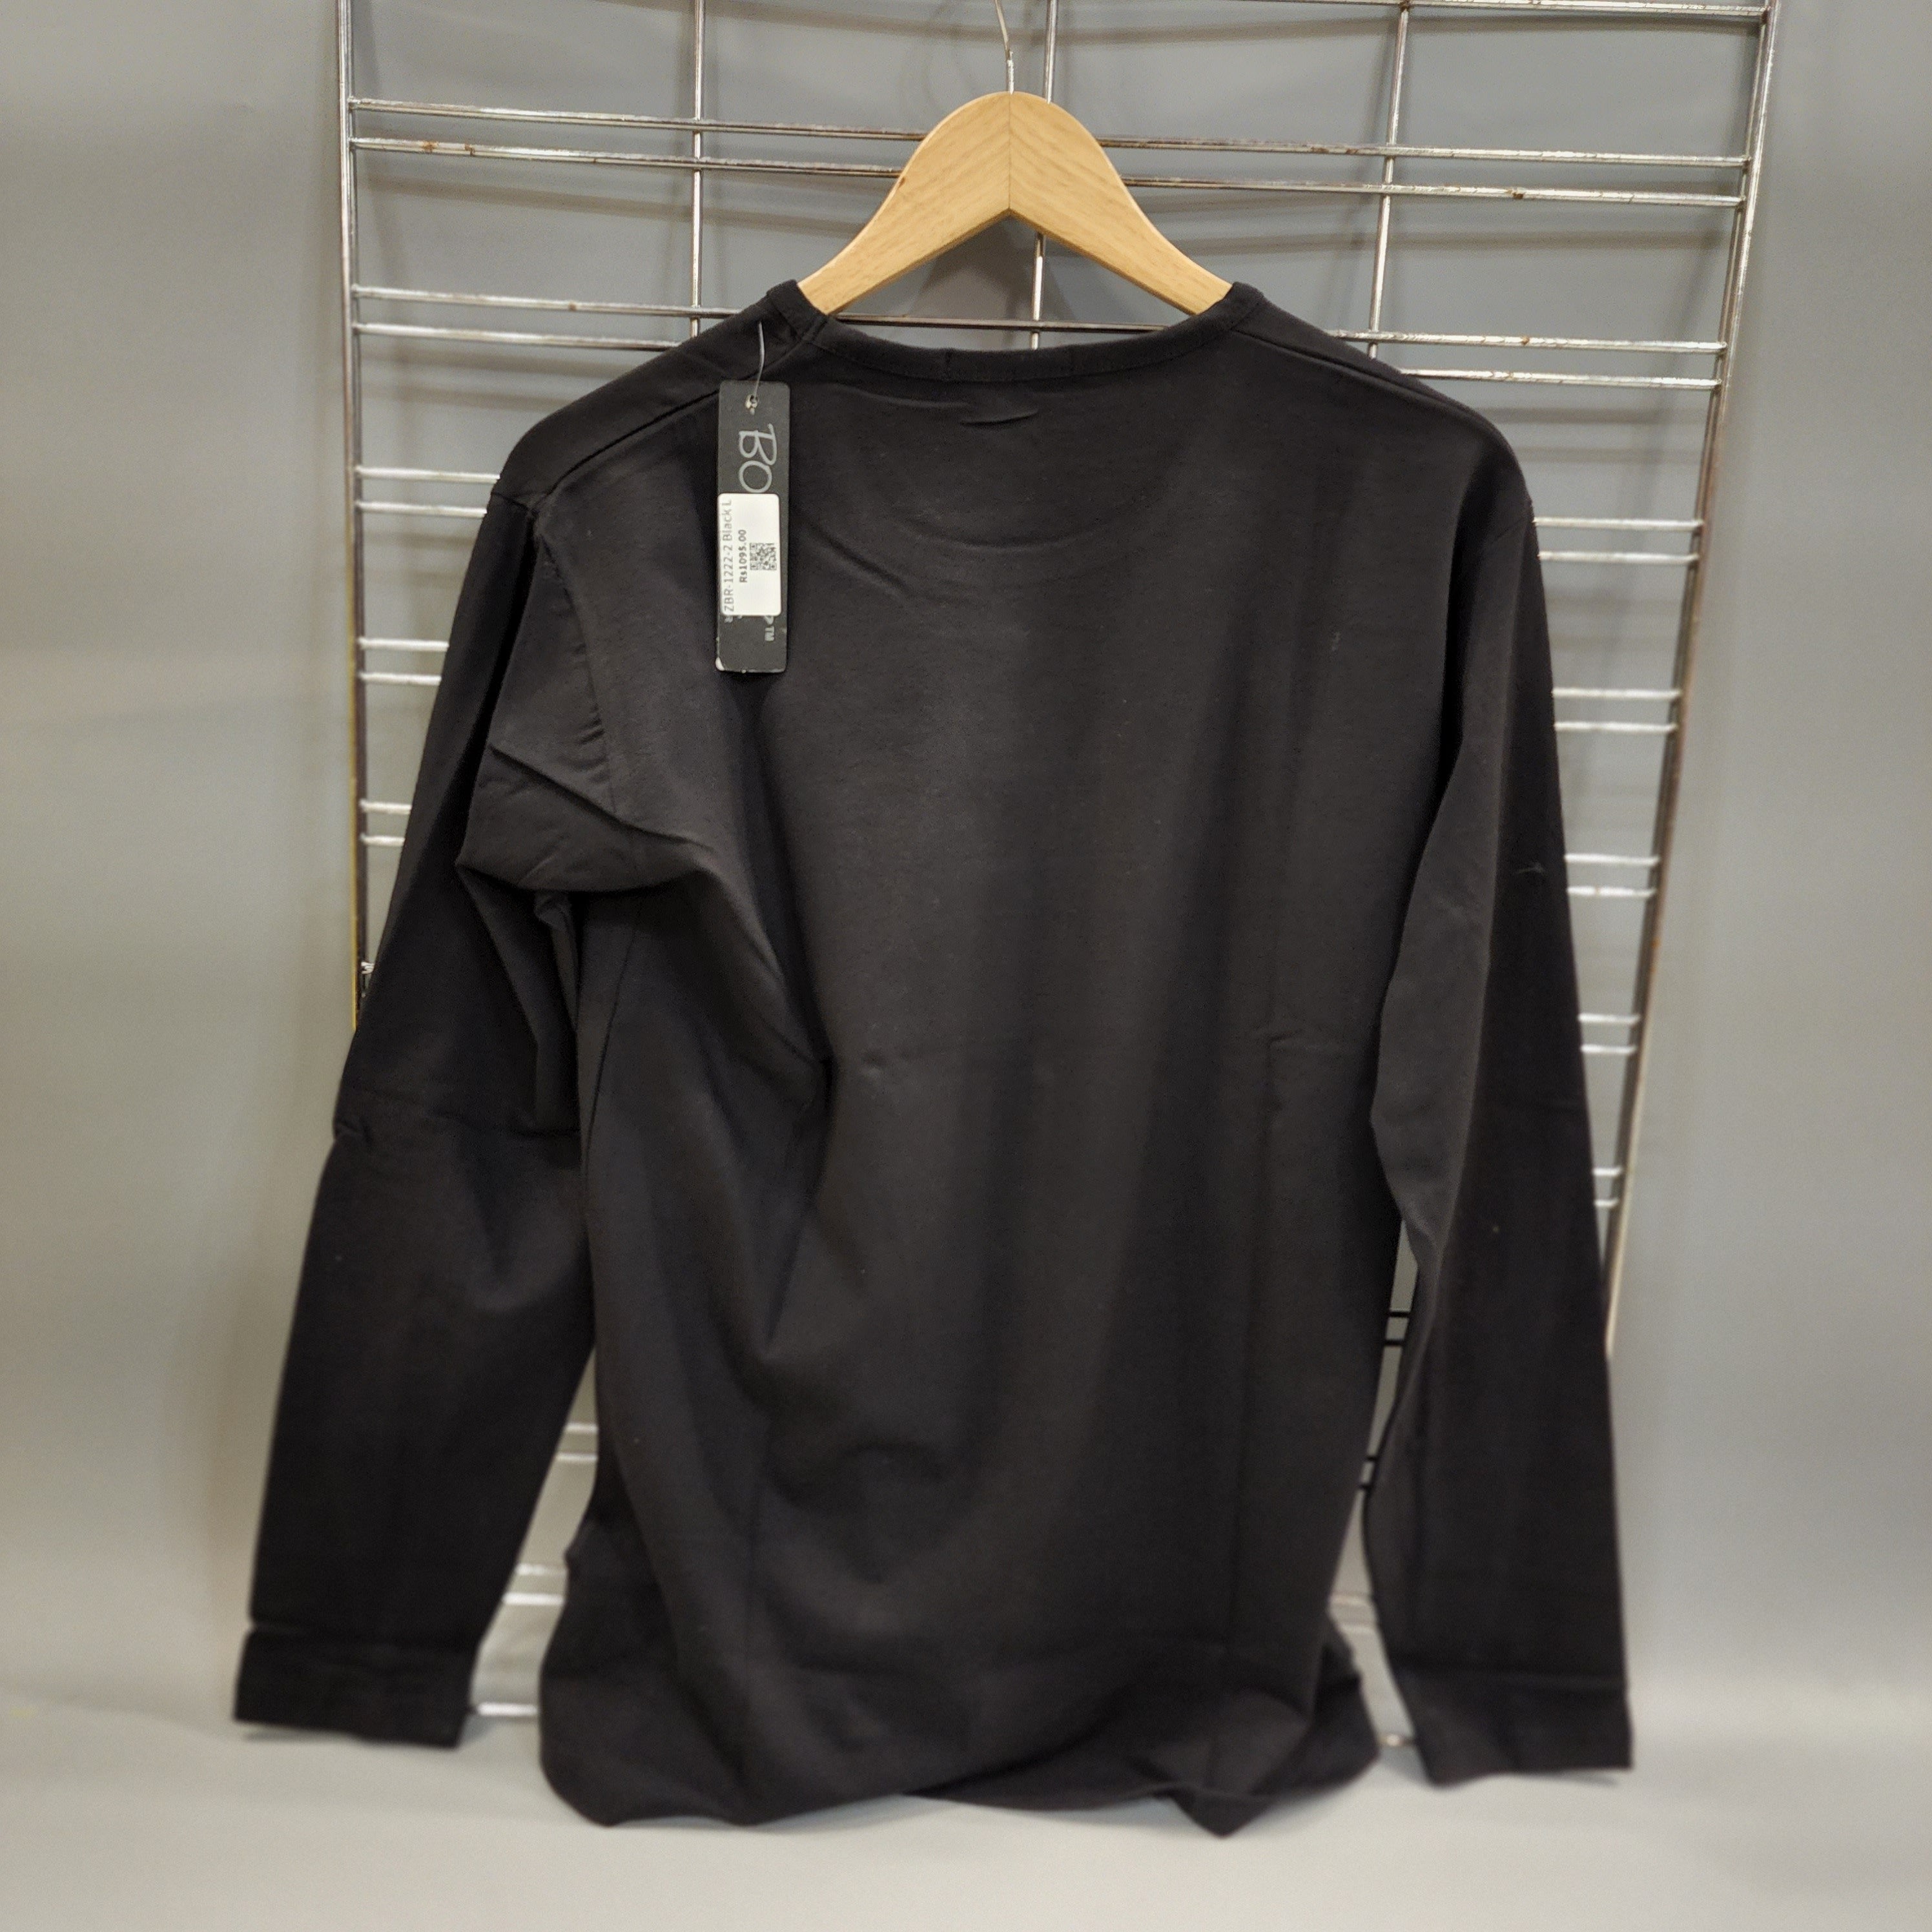 Black Long Sleeves T Shirt - Maha fashions -  